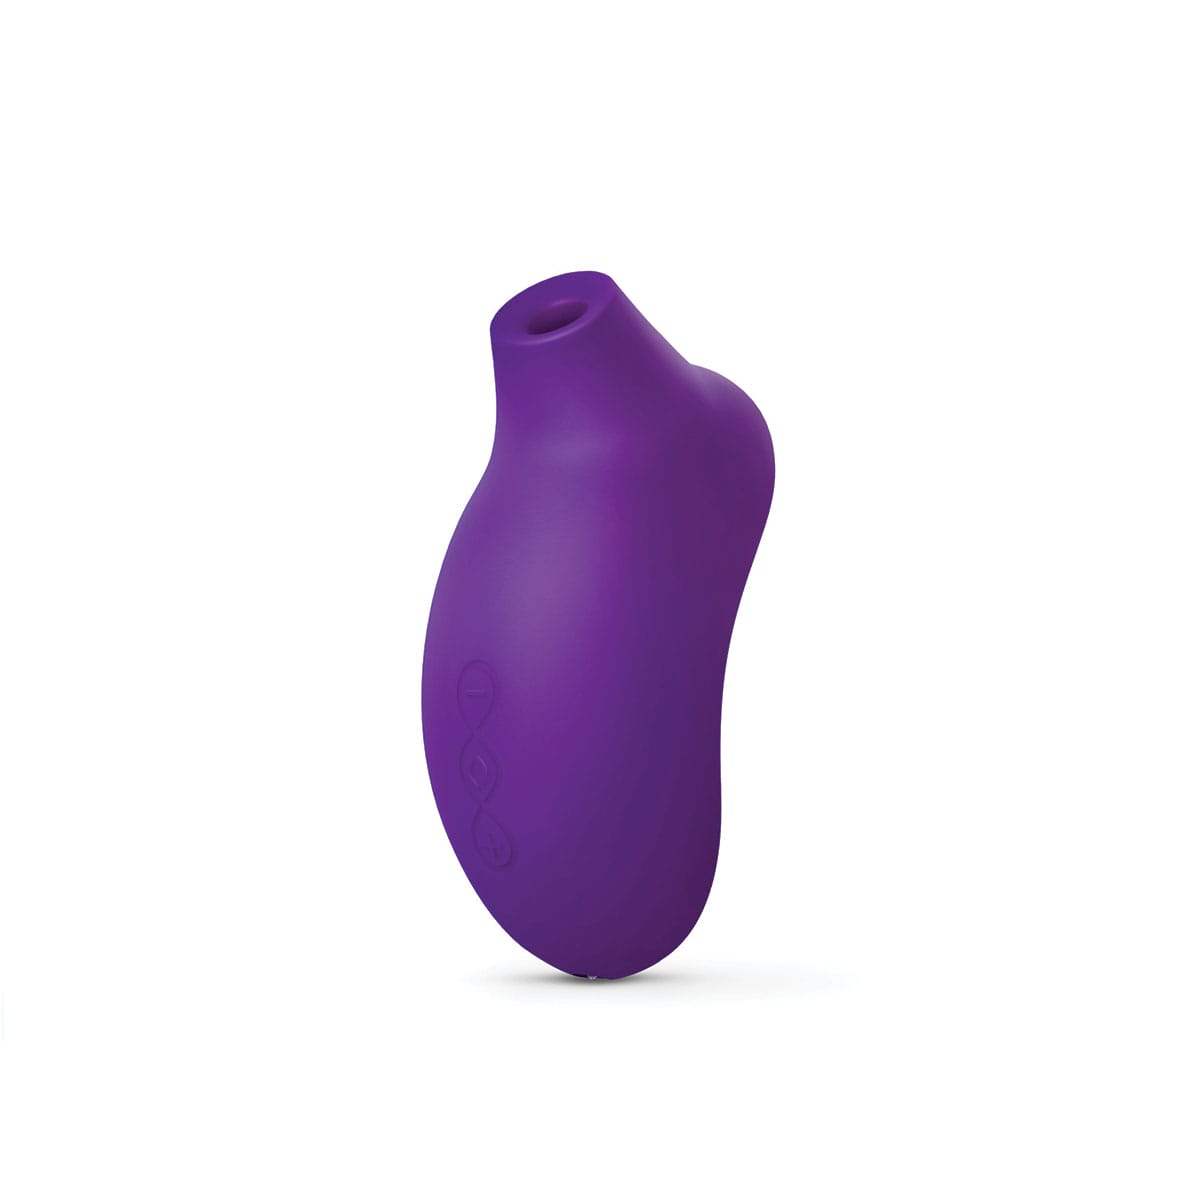 Buy a lelo sona 2  purple vibrator.